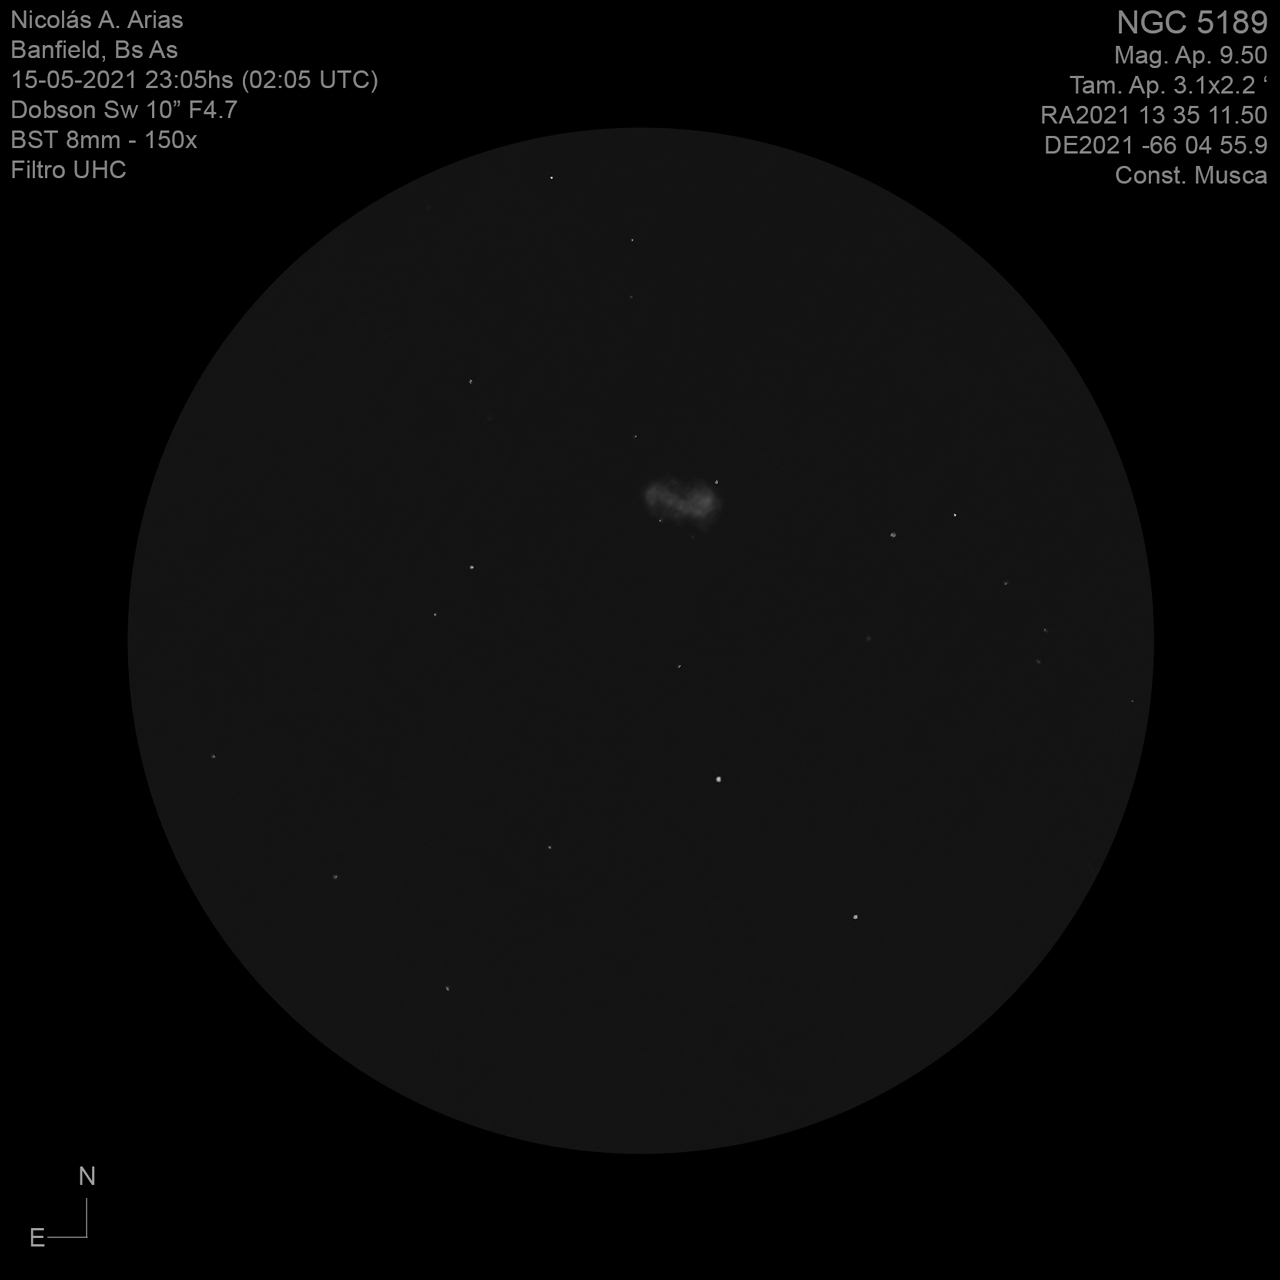 NGC5189-15-5-2021-150x-uhc.jpg.33bd96b3549be5c1c5c392165f098391.jpg